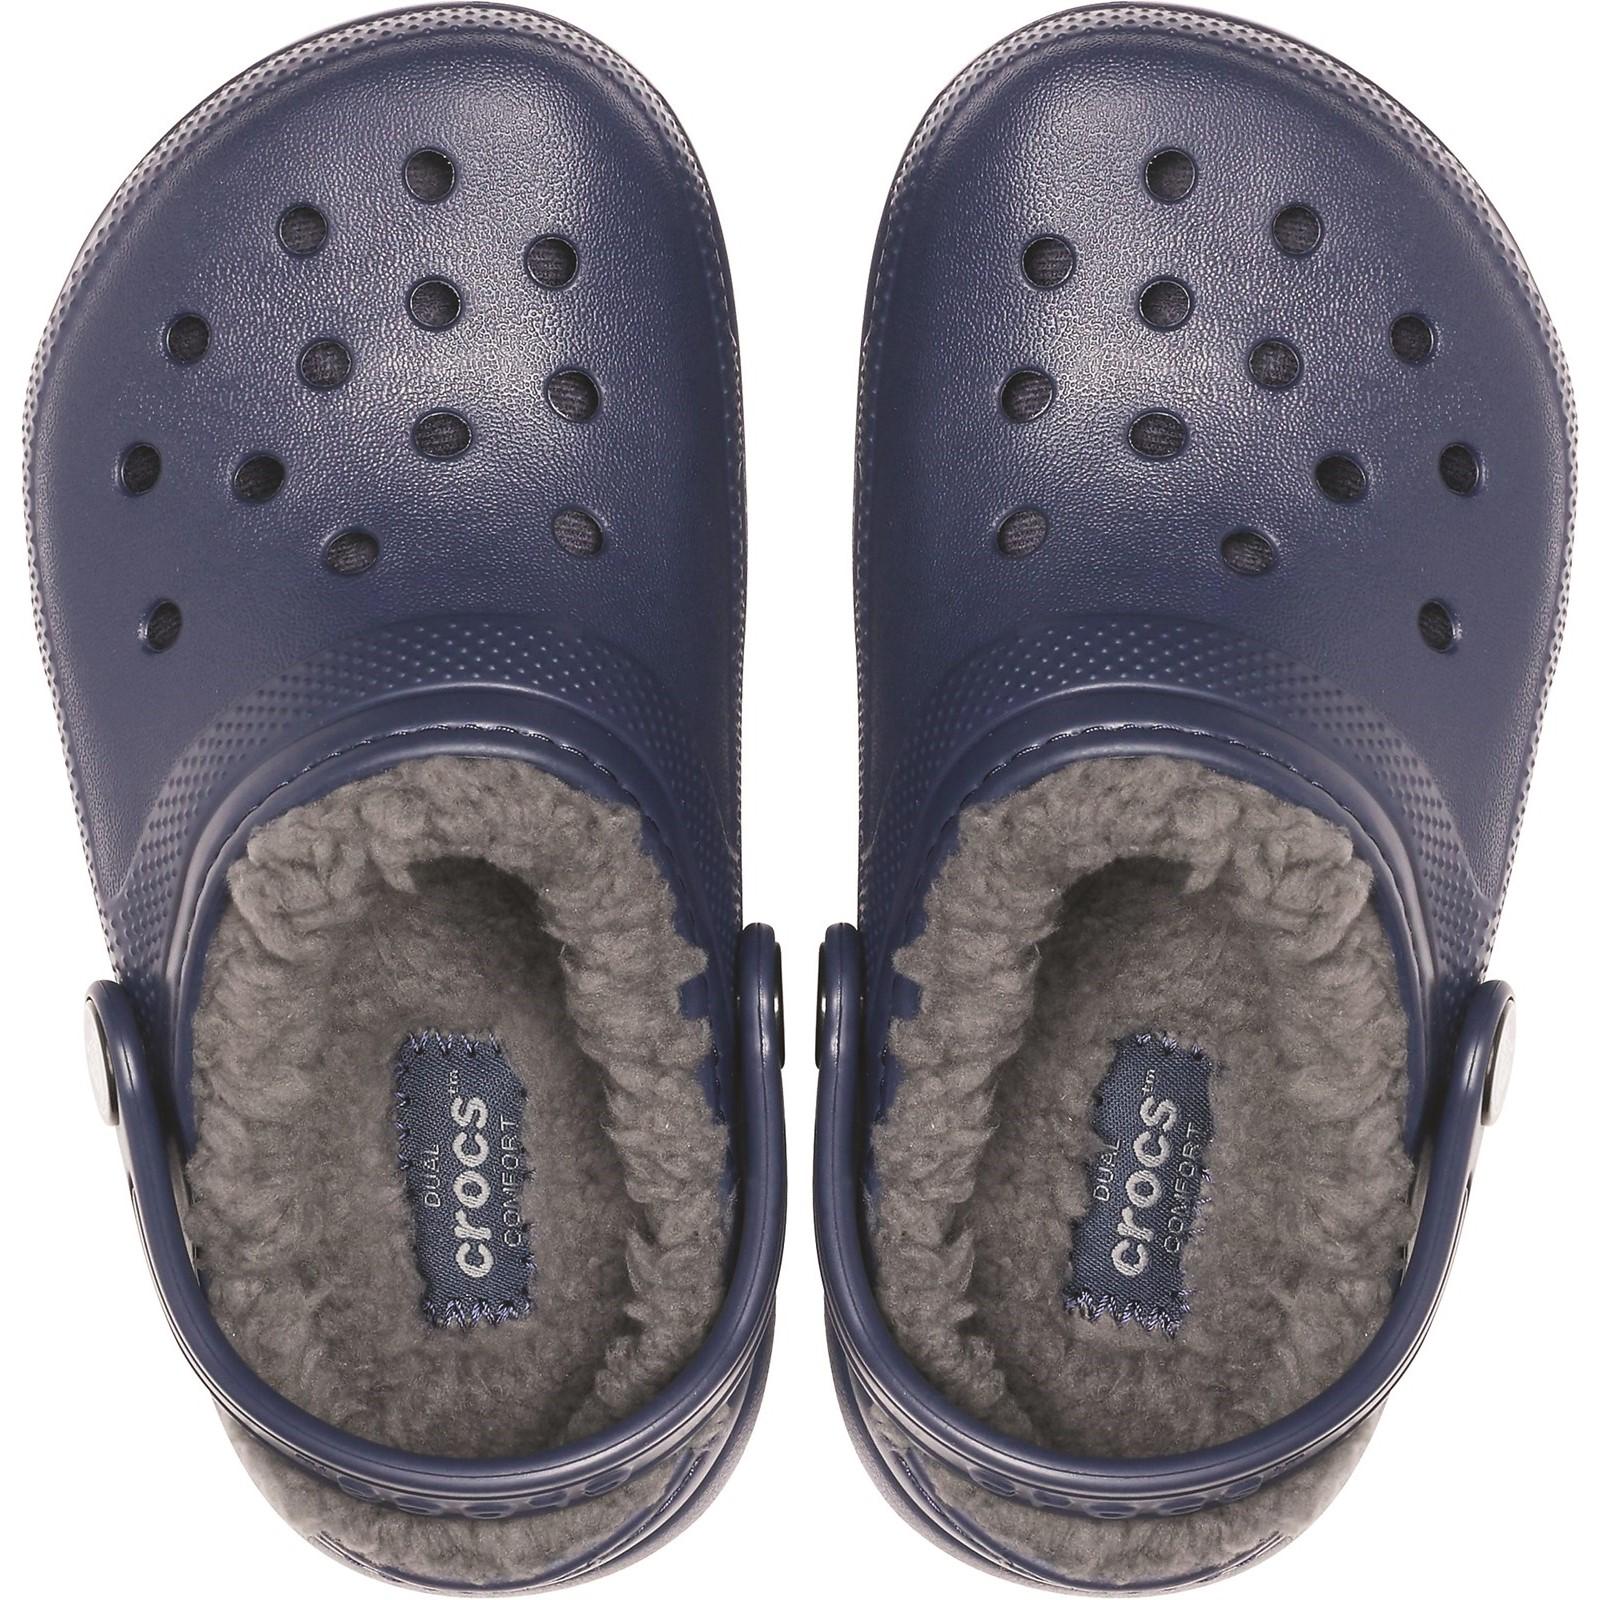 Crocs Classic Lined Slip On Clog Sandals